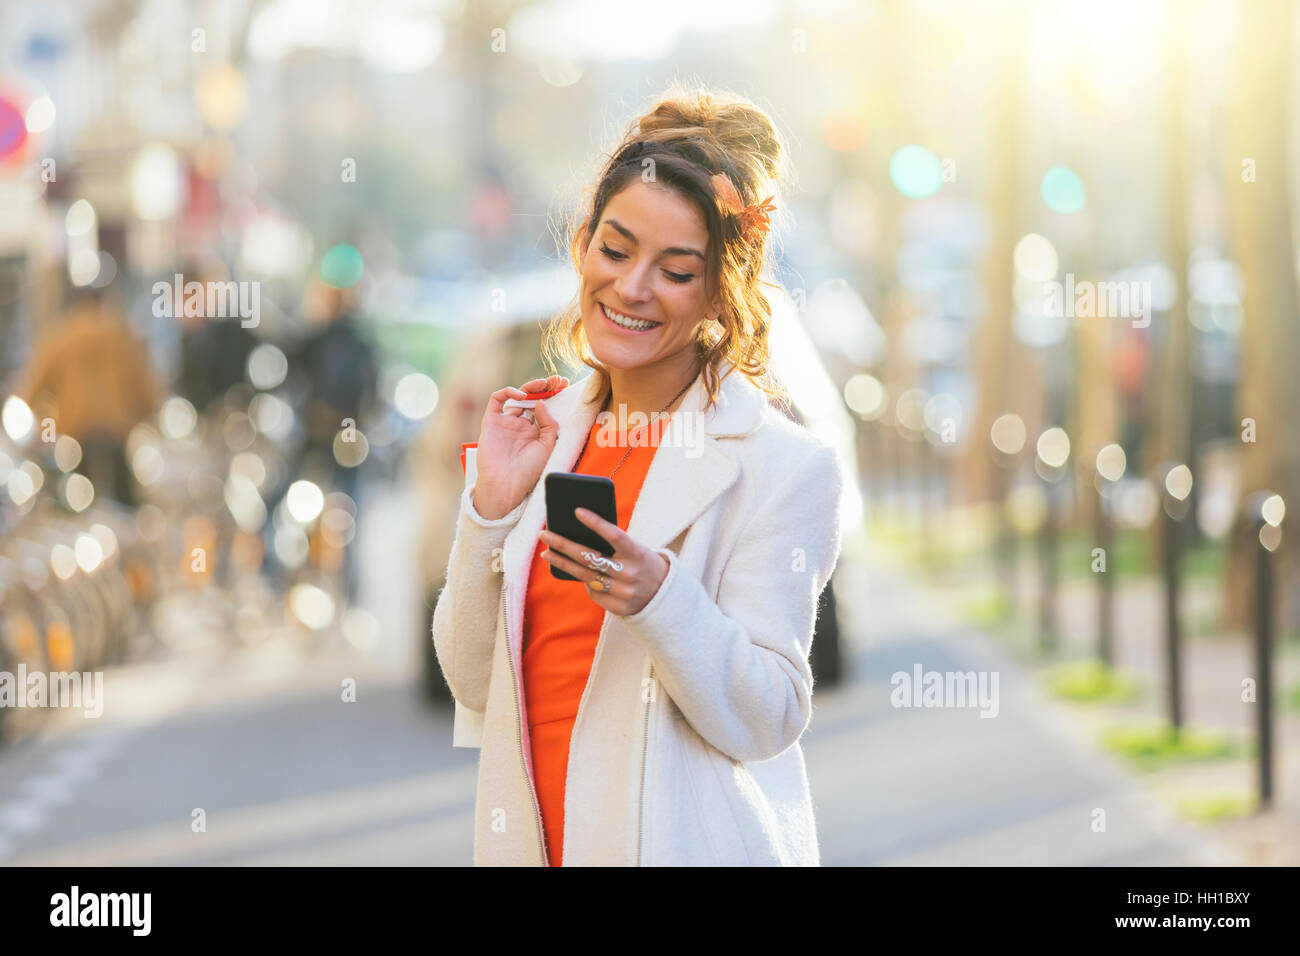 Paris, Frau mit Smartphone in der Straße Stockfoto